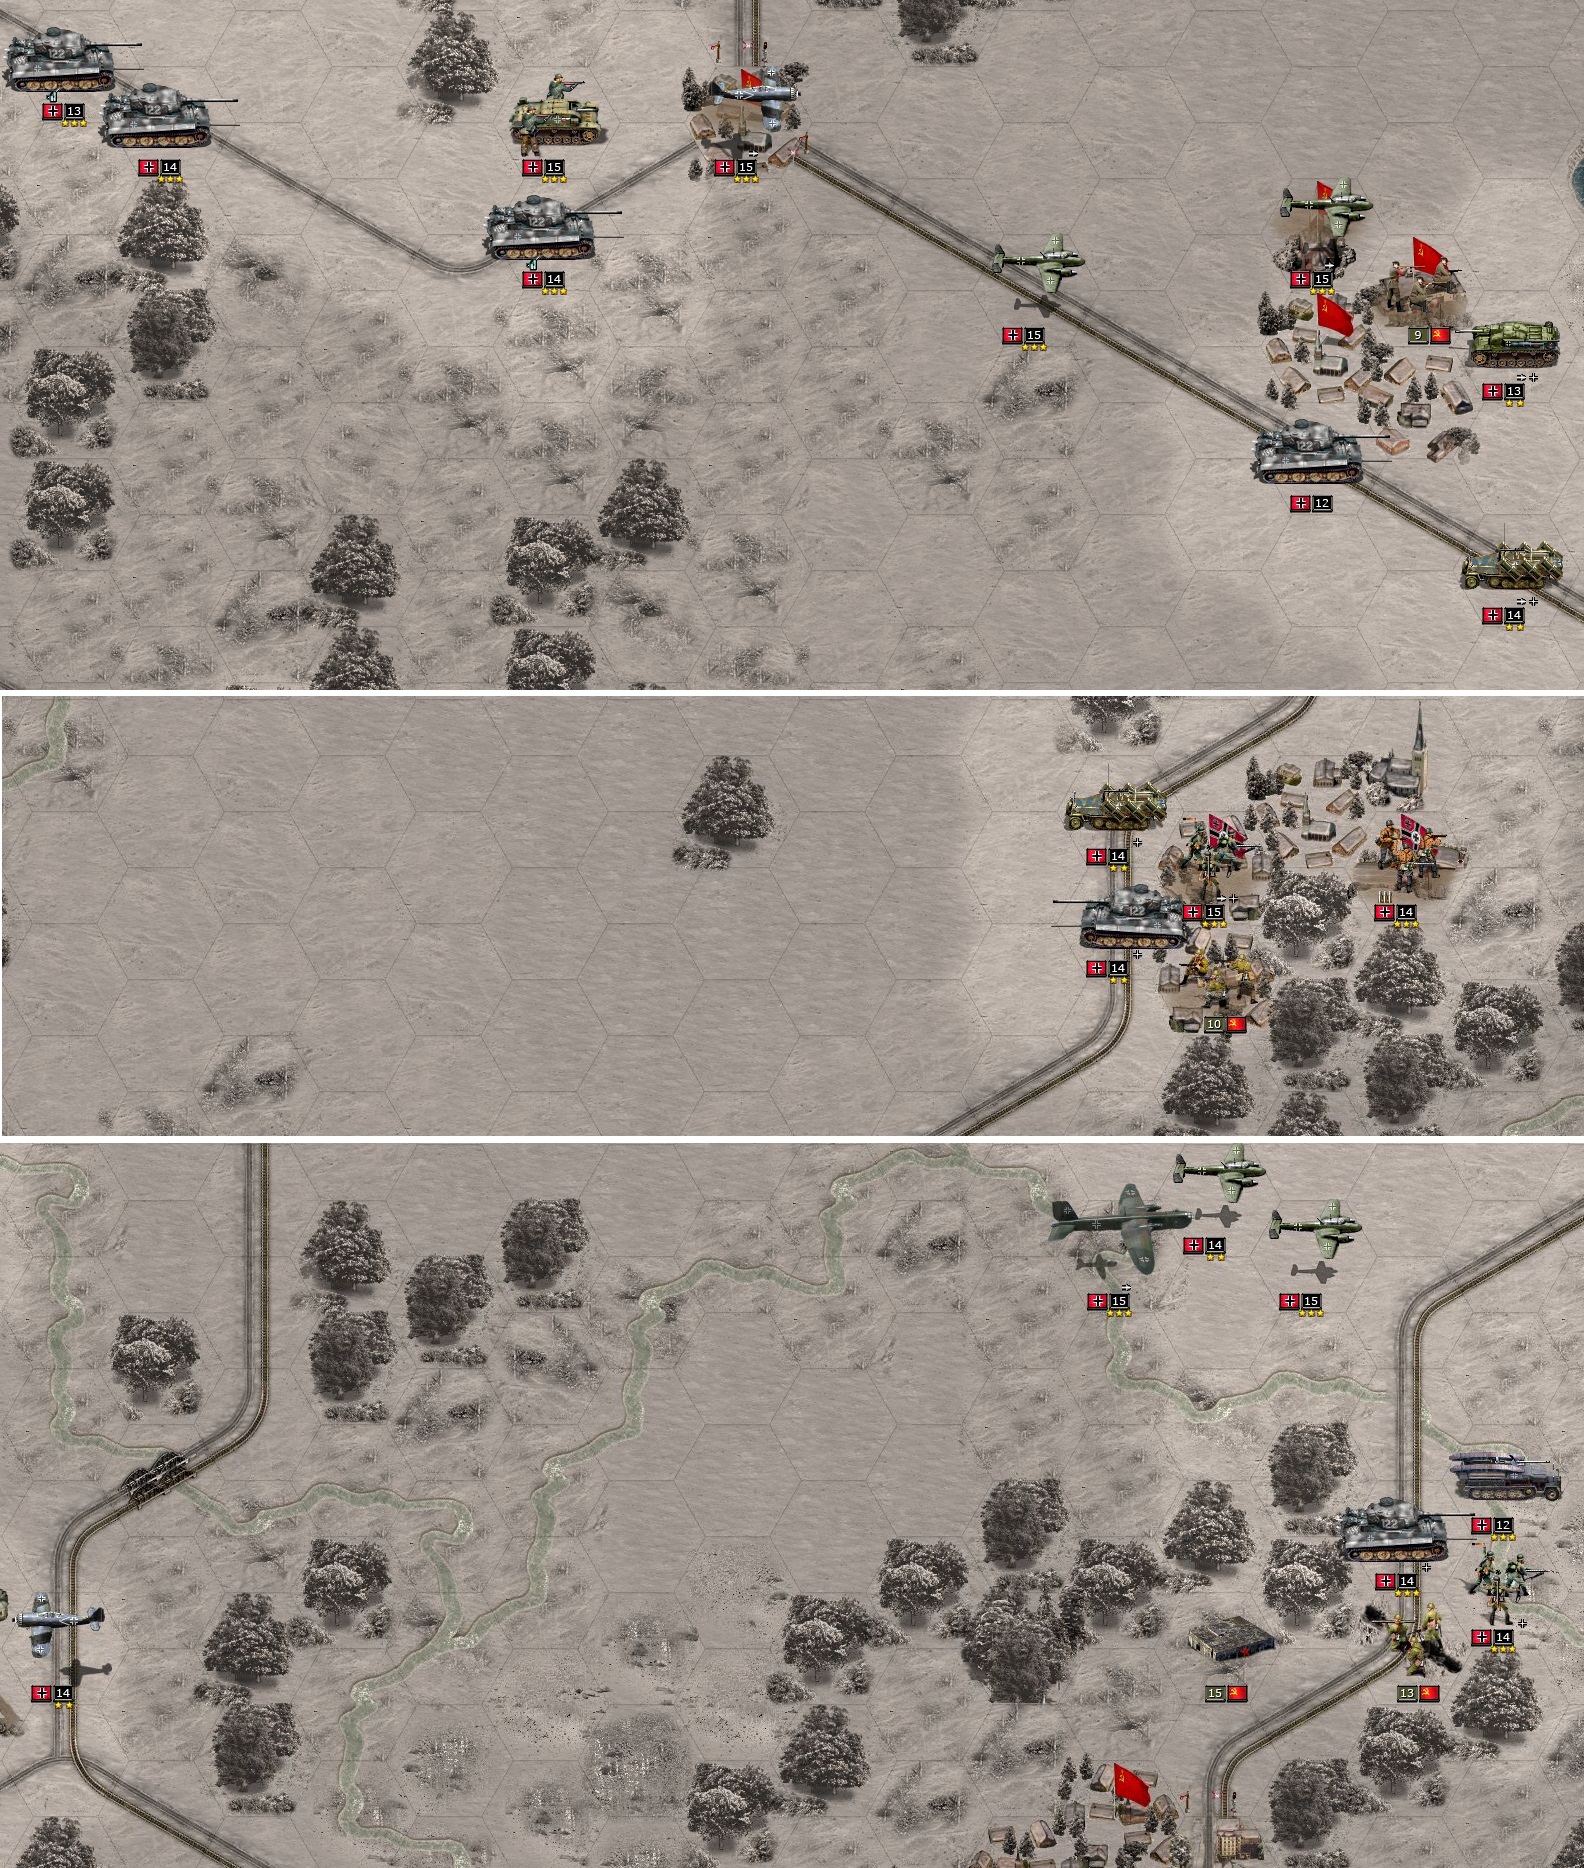 Operation Mars 14.jpg